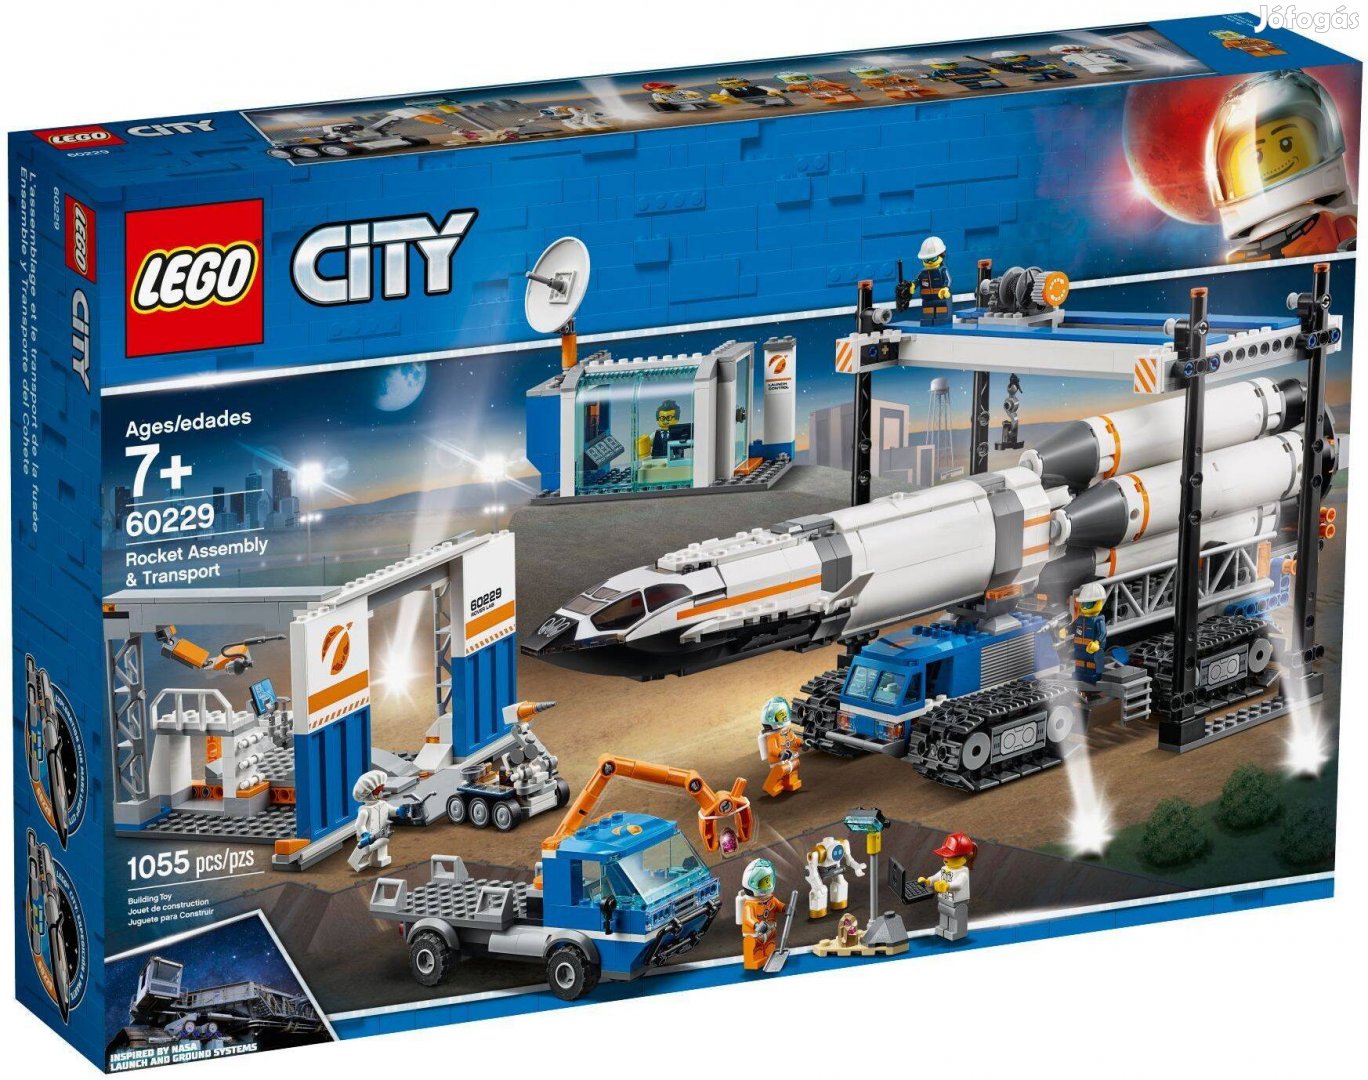 LEGO City 60229 Rocket Assembly &Transport új, bontatlan